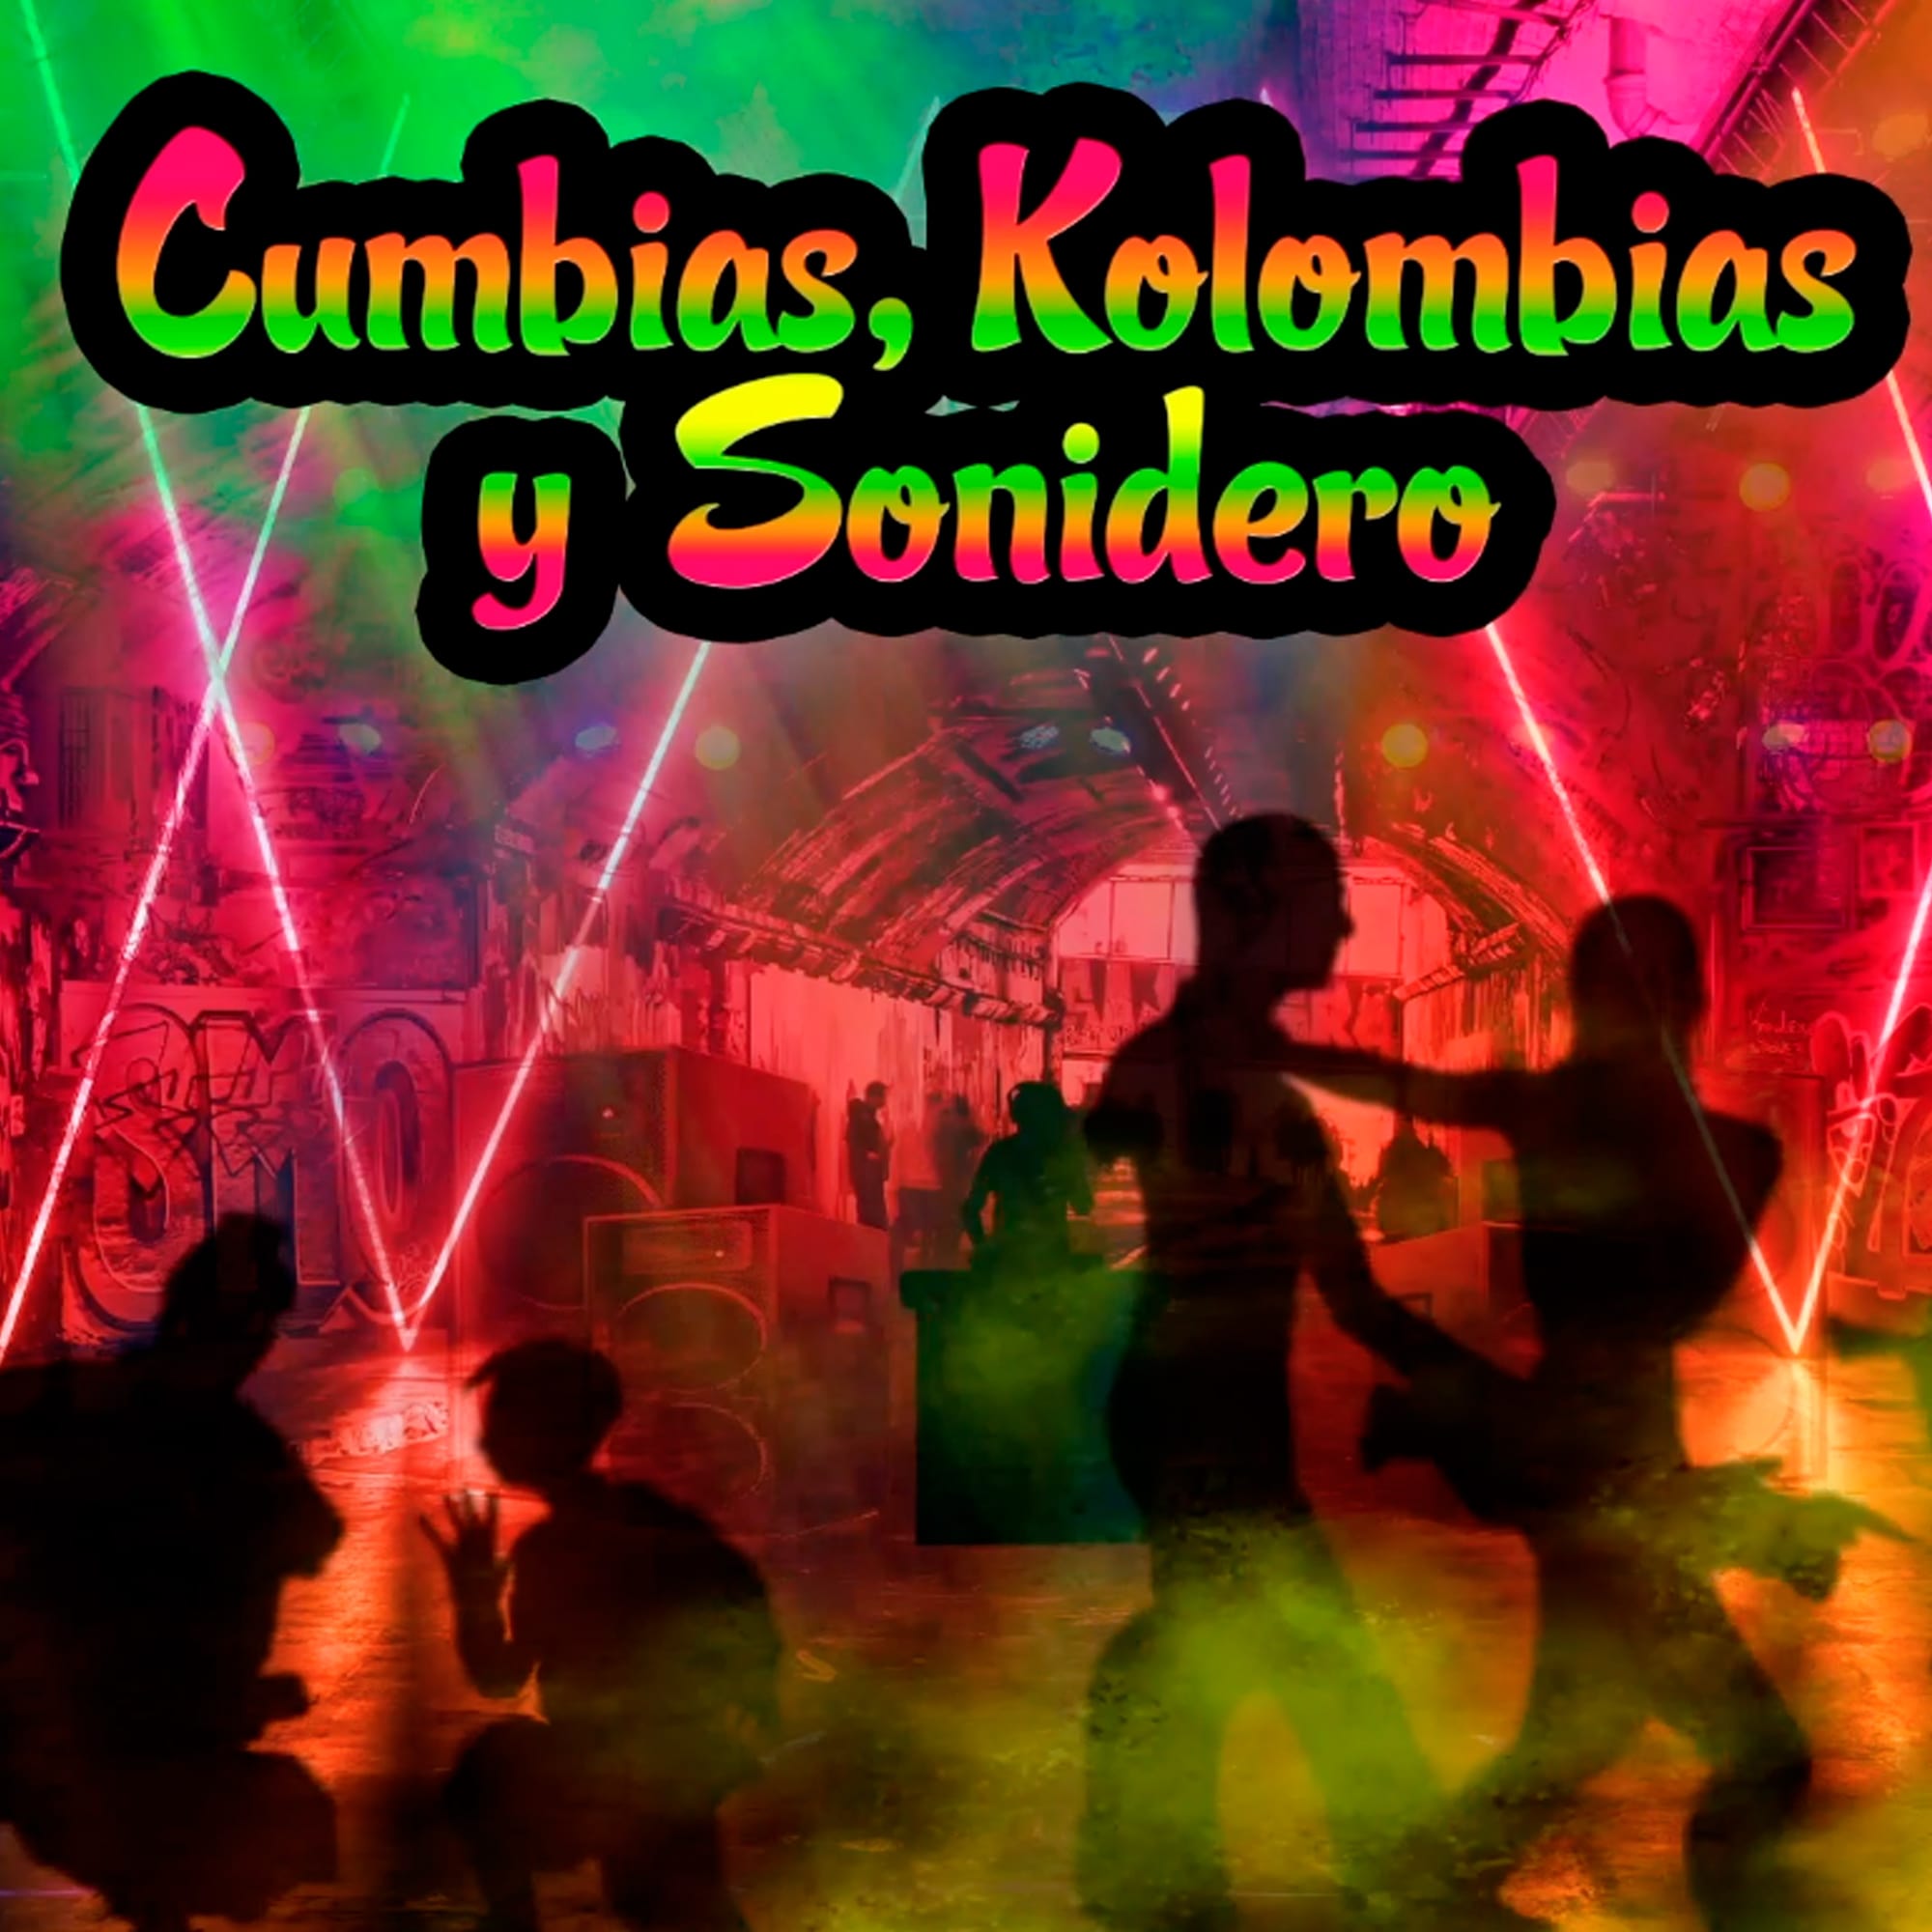 Cumbias, Kolombianas y Sonideras